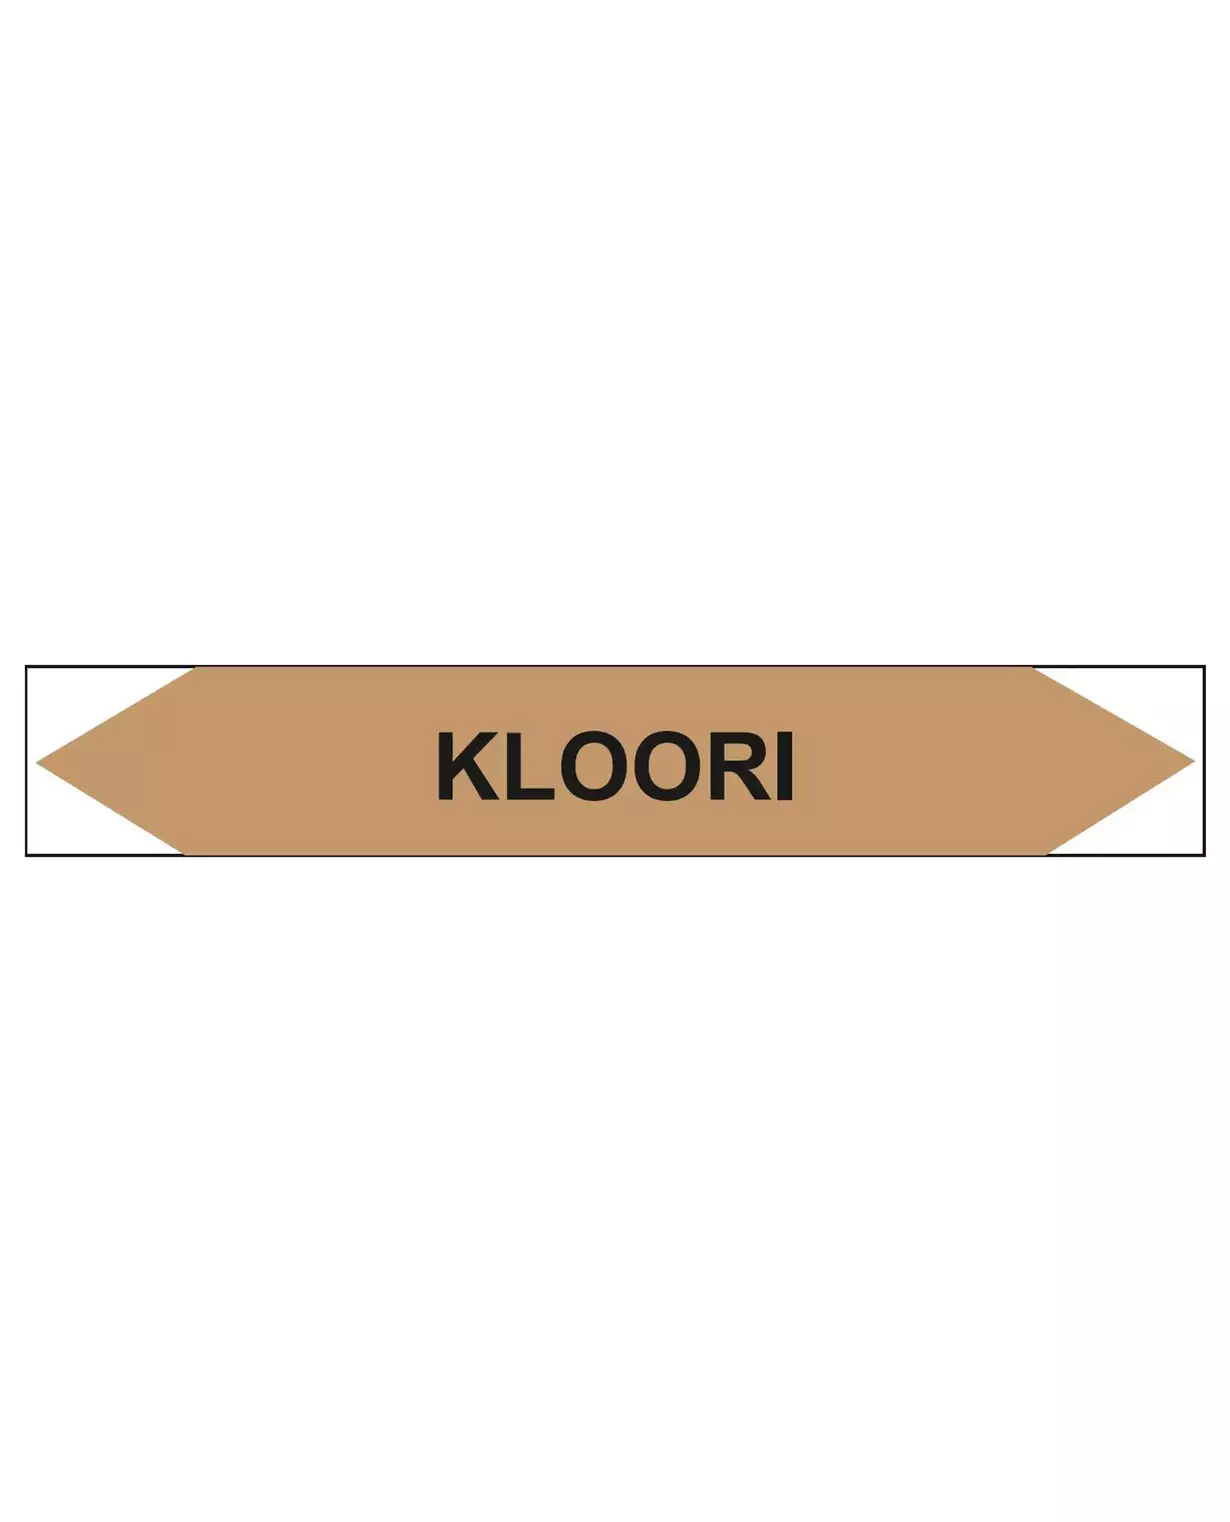 Kloori, 160x25 mm